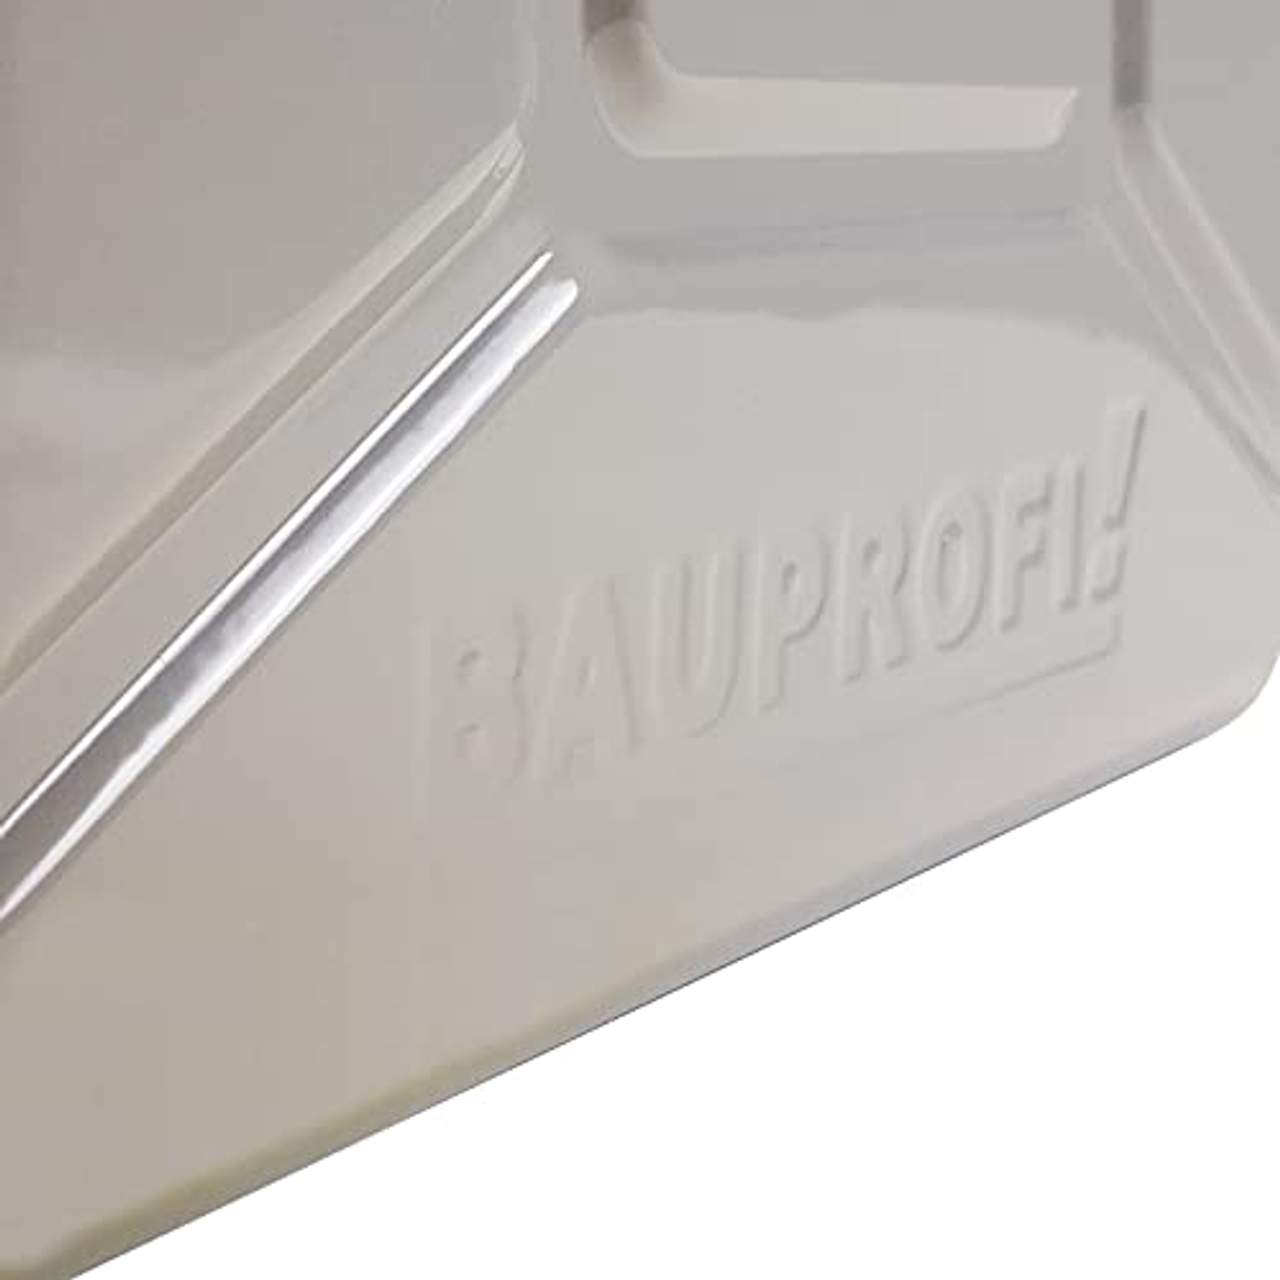 BAUPROFI 10 Liter Stahlblechkanister  